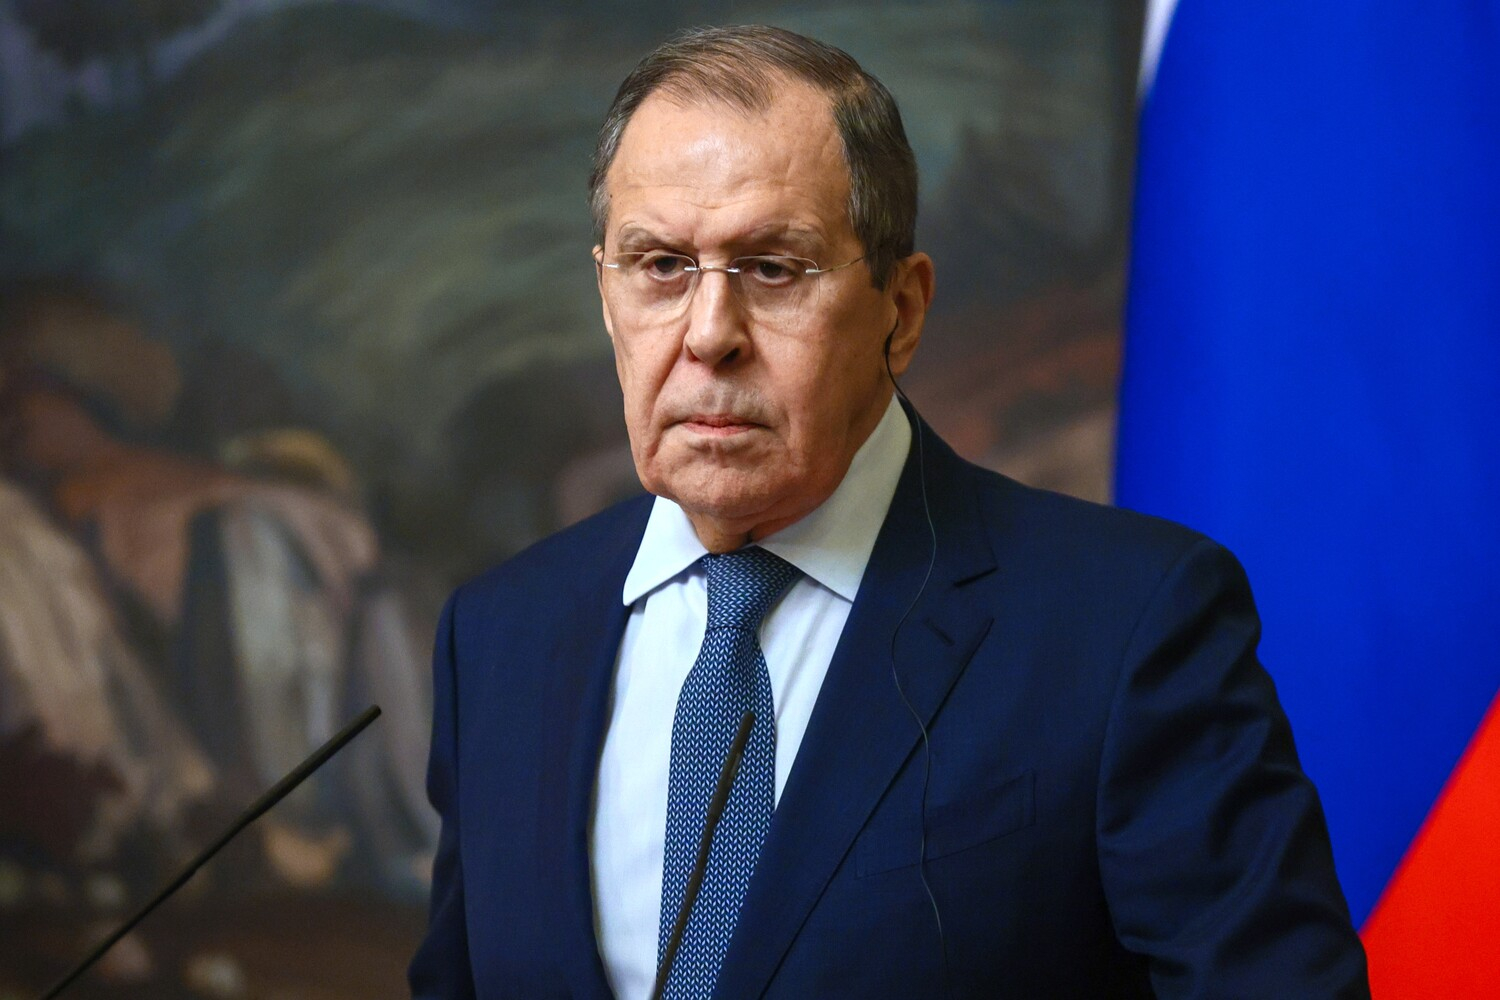 Кипр отменил встречу с Лавровым после обращения Путина о мобилизации